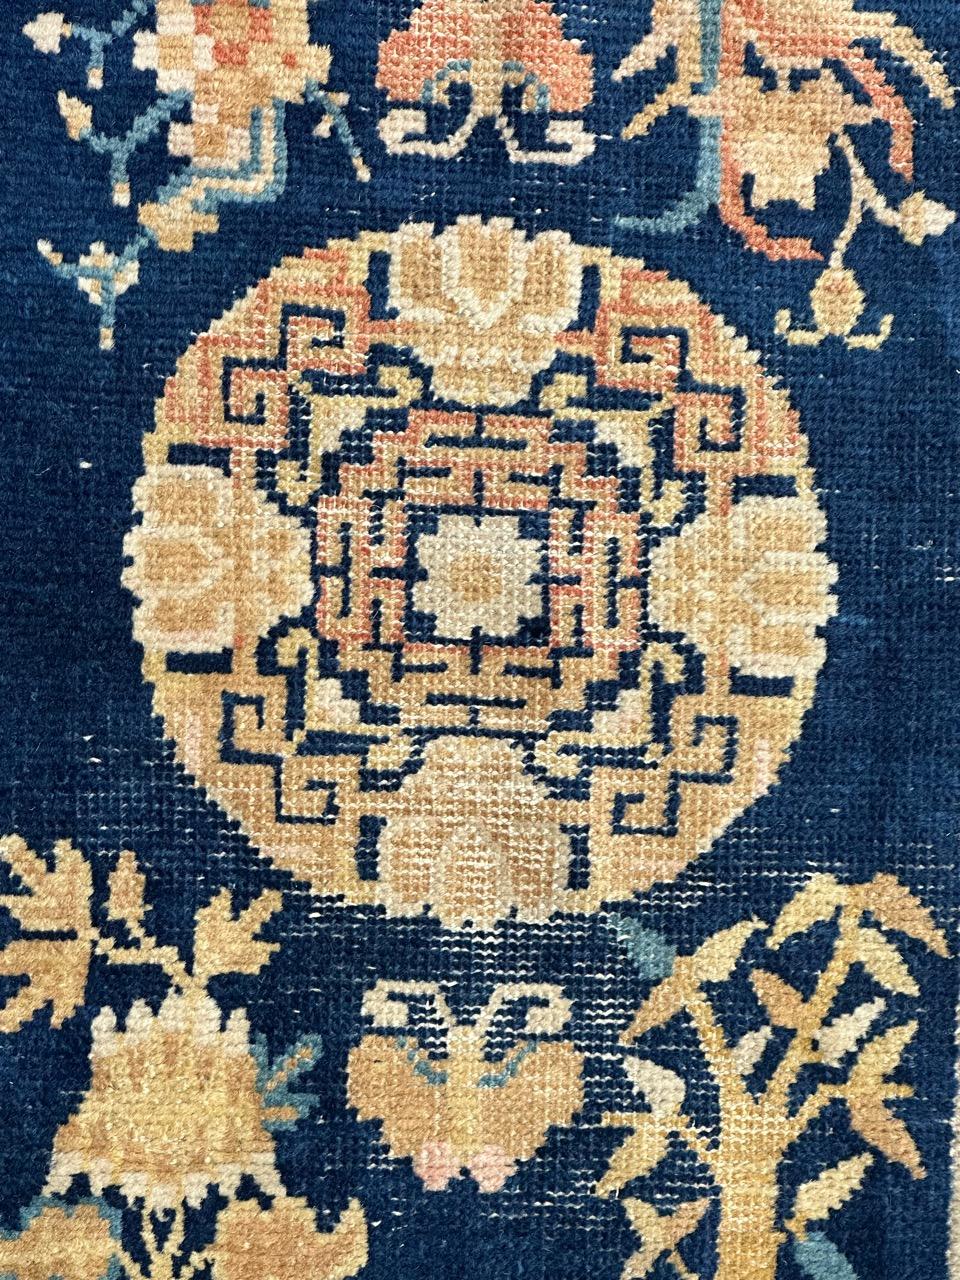 Sehr schöner antiker und seltener chinesischer Teppich aus Ningxia mit schönem chinesischem Design und Symbolen auf dem Design, und schönen natürlichen Farben mit einem marineblauen Feld und gelben, goldenen, orangen, weißen und himmelblauen auf dem